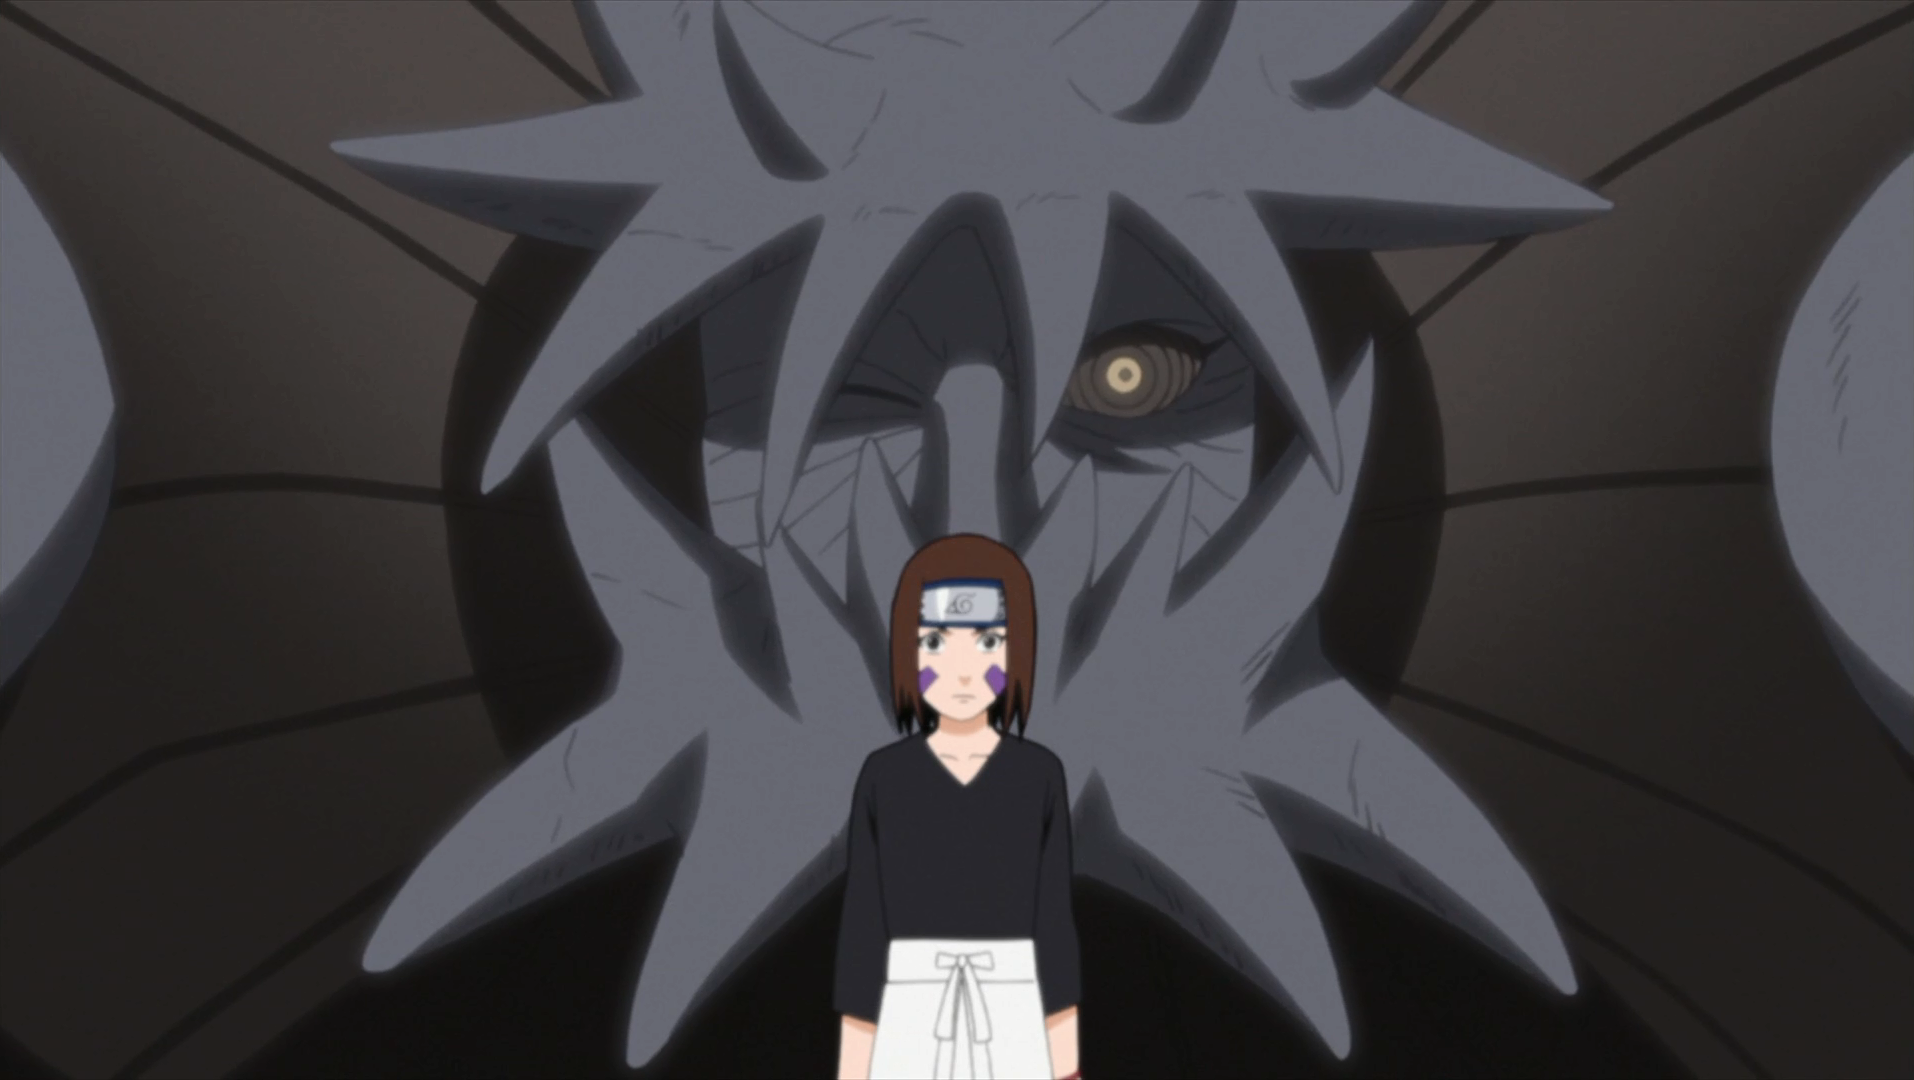 Rin Nohara  Naruto shippuden anime, Anime naruto, Naruto sasuke sakura